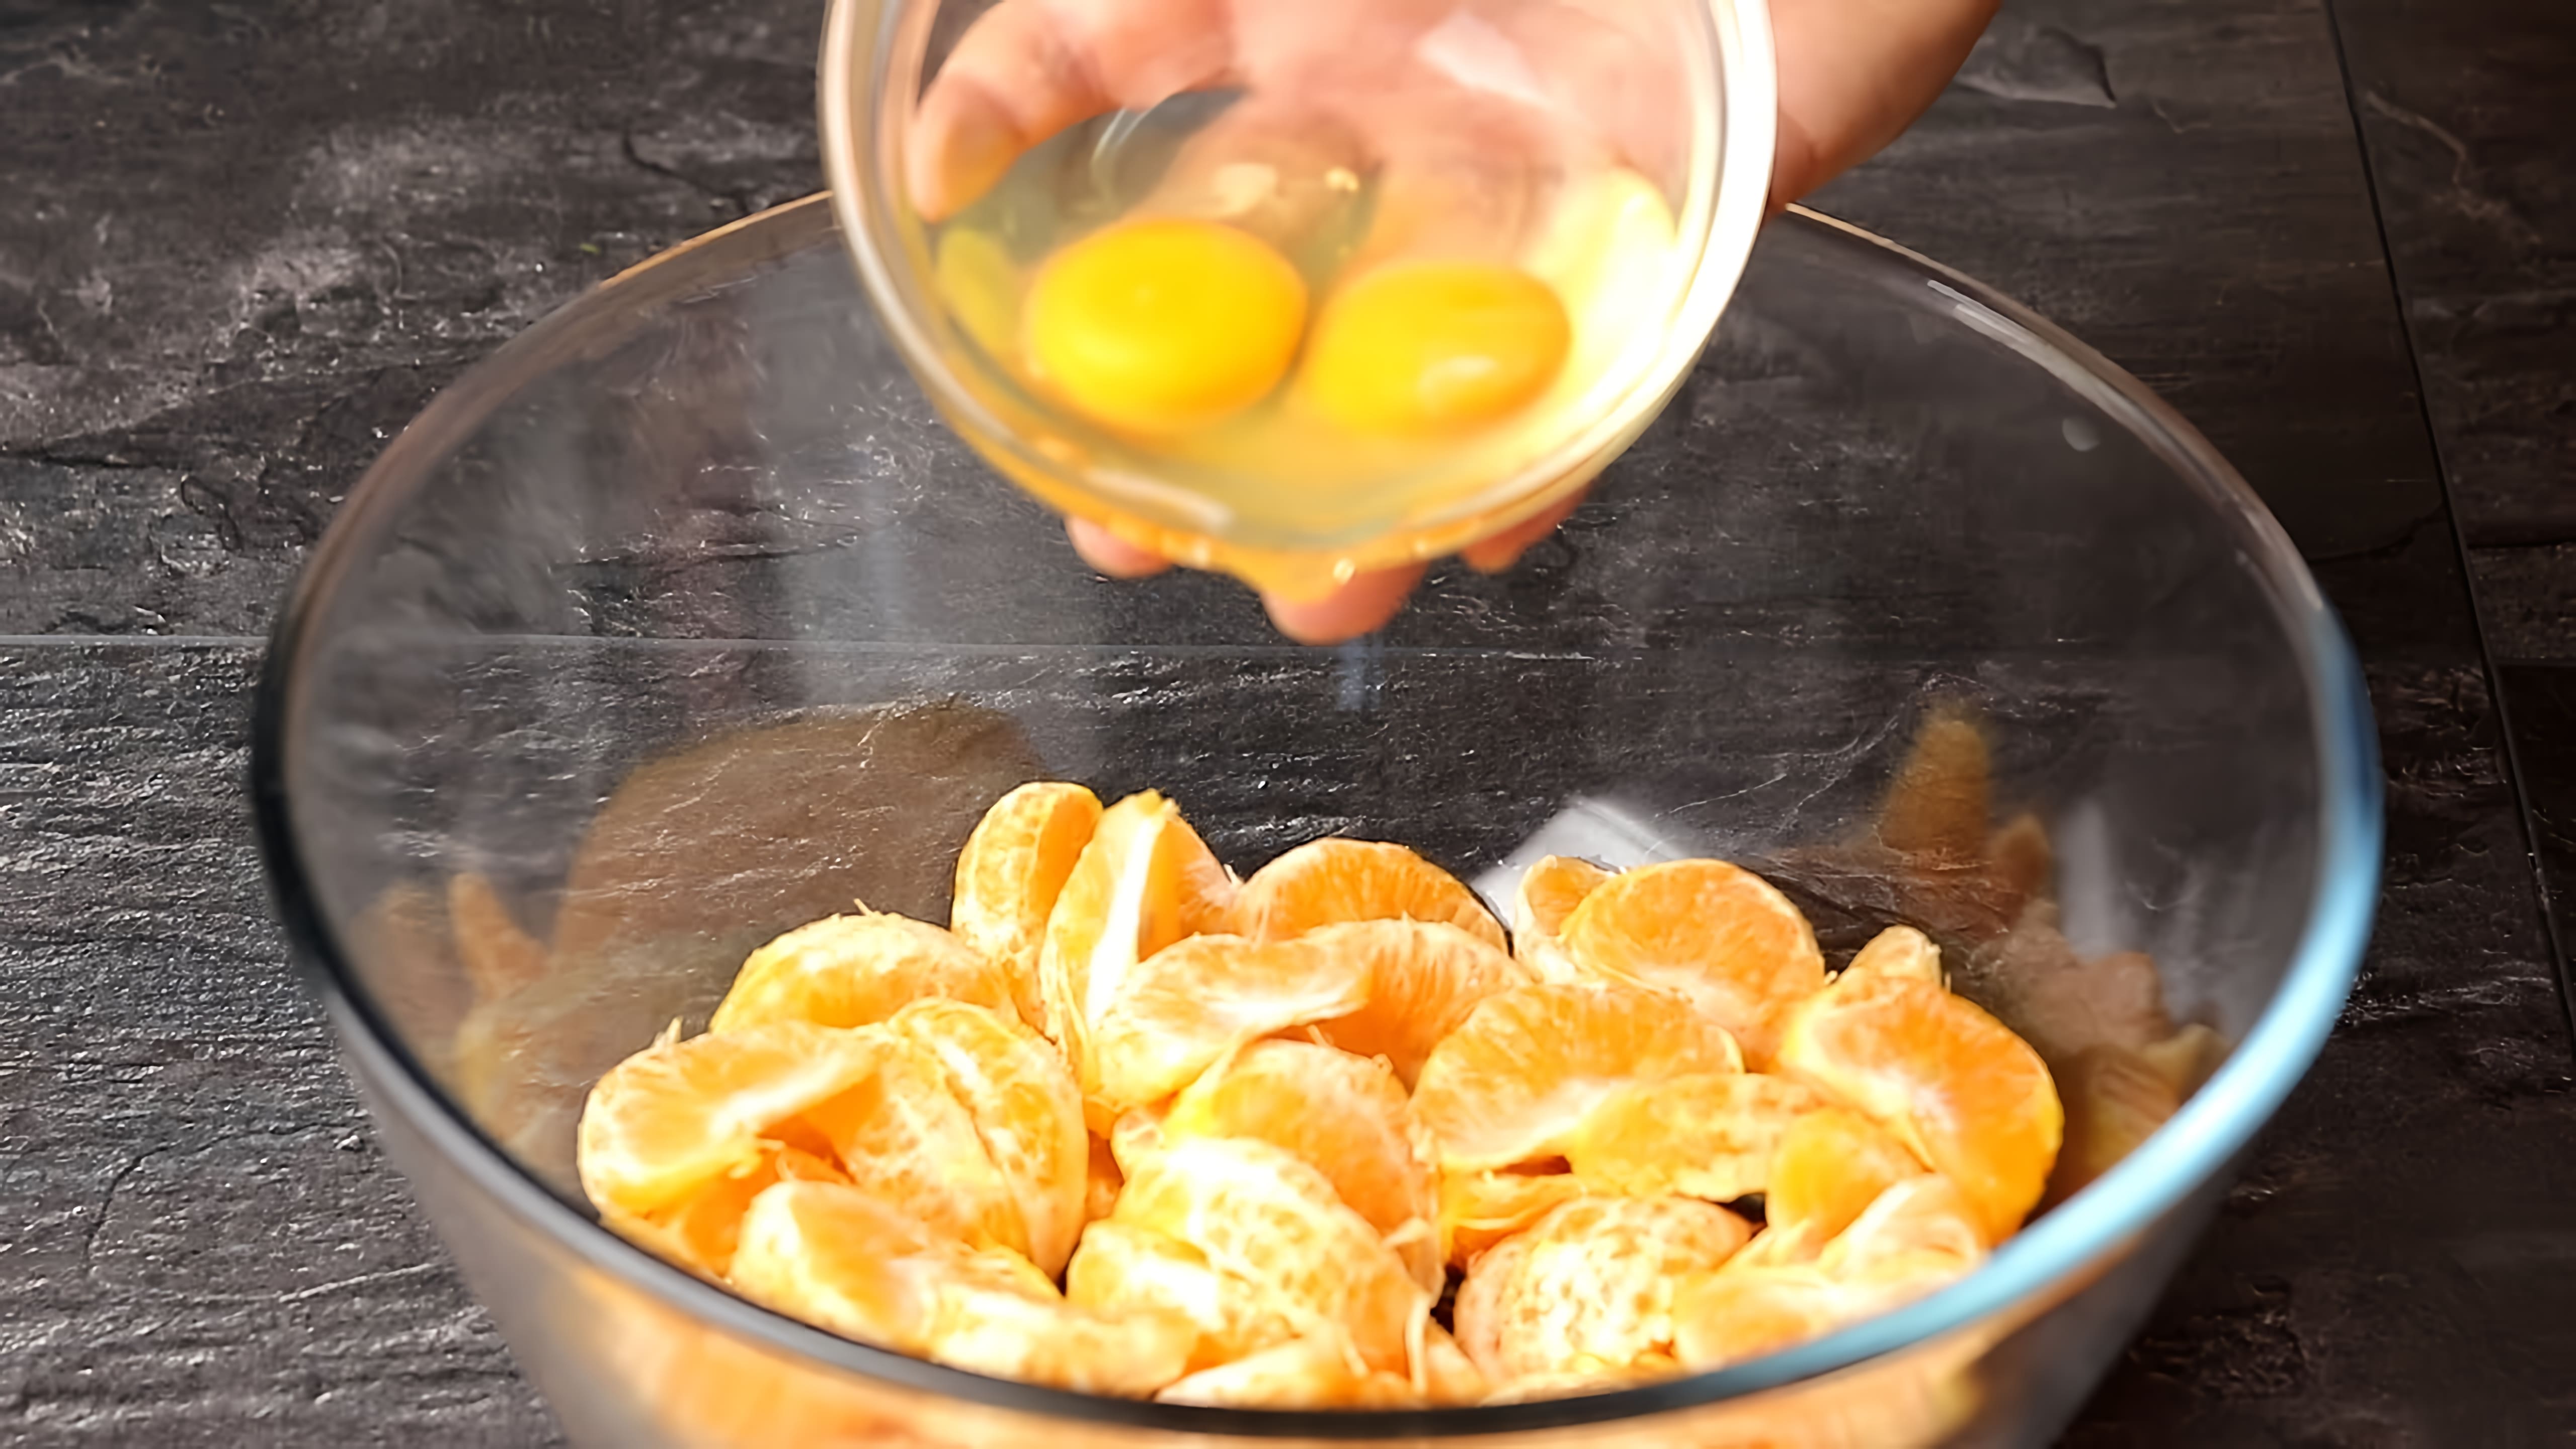 Видео: А Вы Так готовите Мандарины? Быстрый и Вкусный рецепт Мандаринового Пирога без дрожжей!